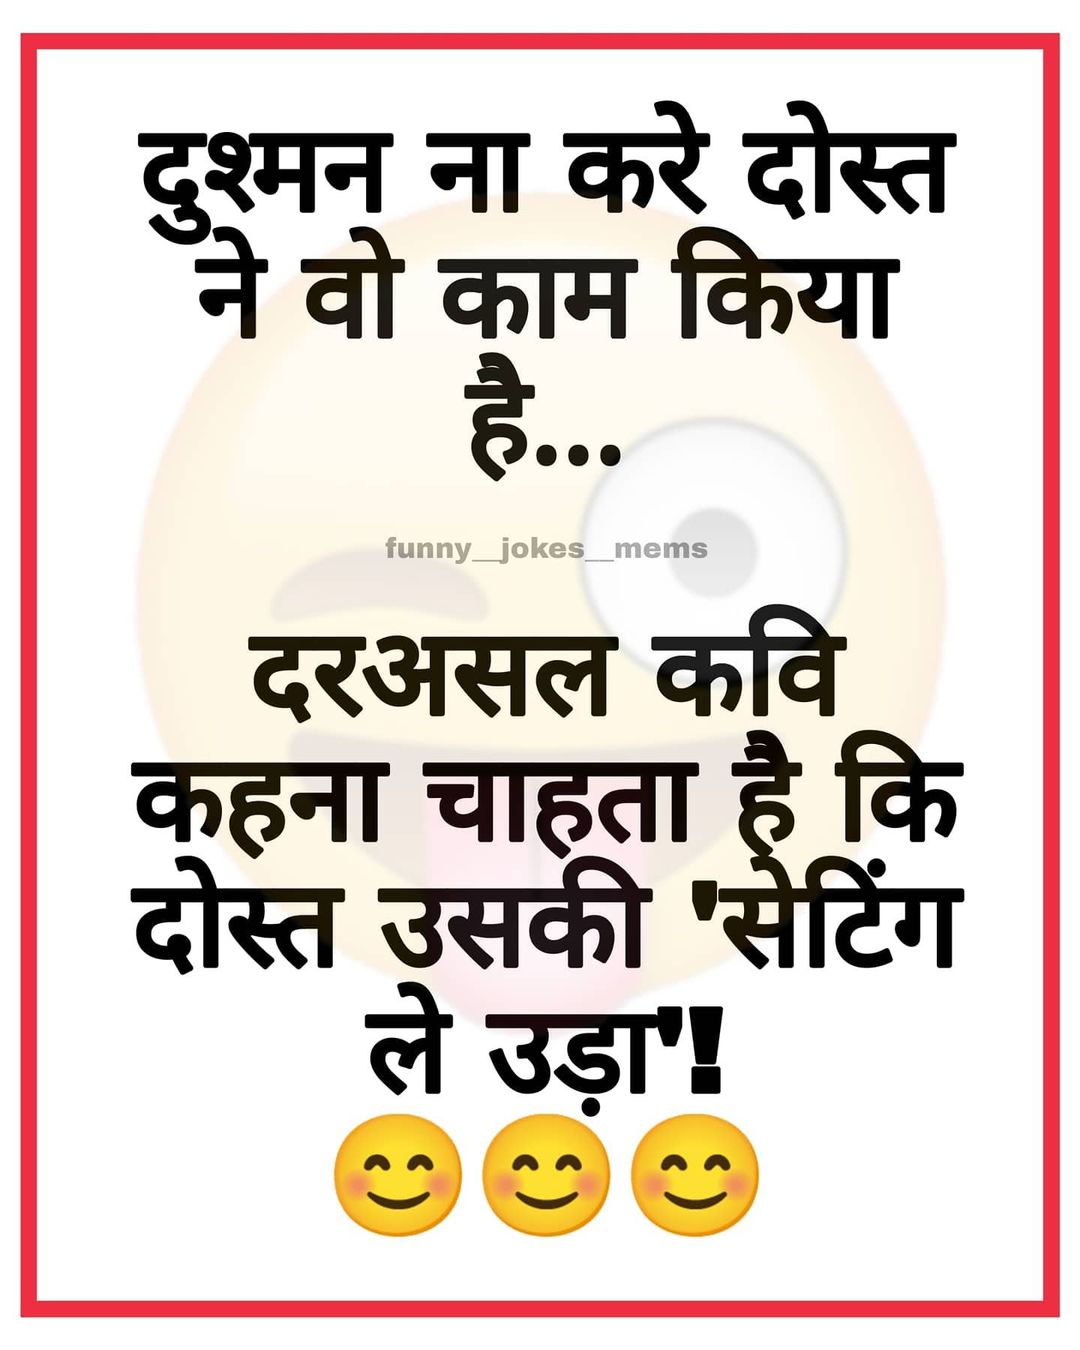 Best Funny Hindi Jokes Majedar Jokes Collection